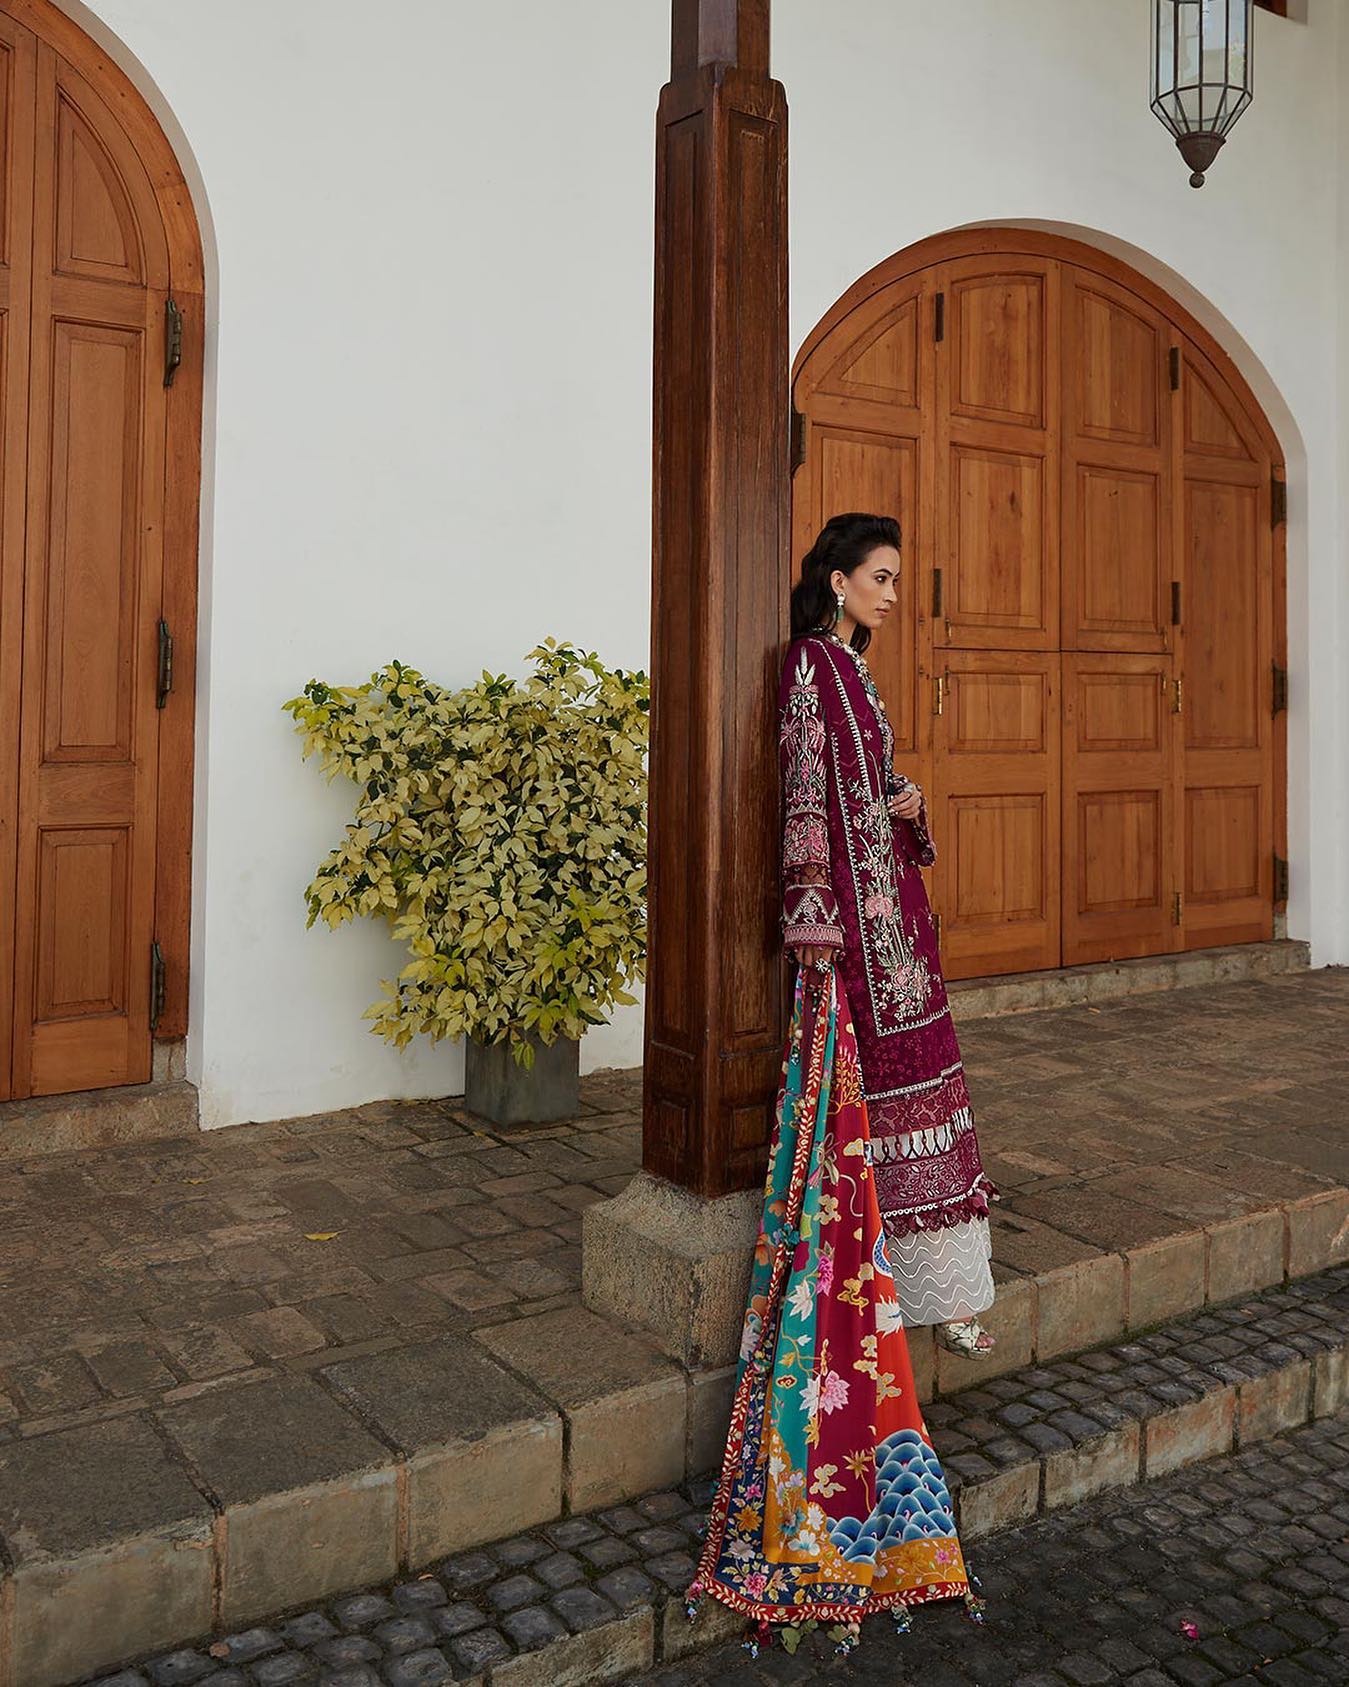 Buy Now - Erina (4B) - Elan Lawn'23 - Shahana Collection UK - Summer Lawn - Pakistani Designer wear - Wedding and Bridal party wear dresses - Elan in UK 